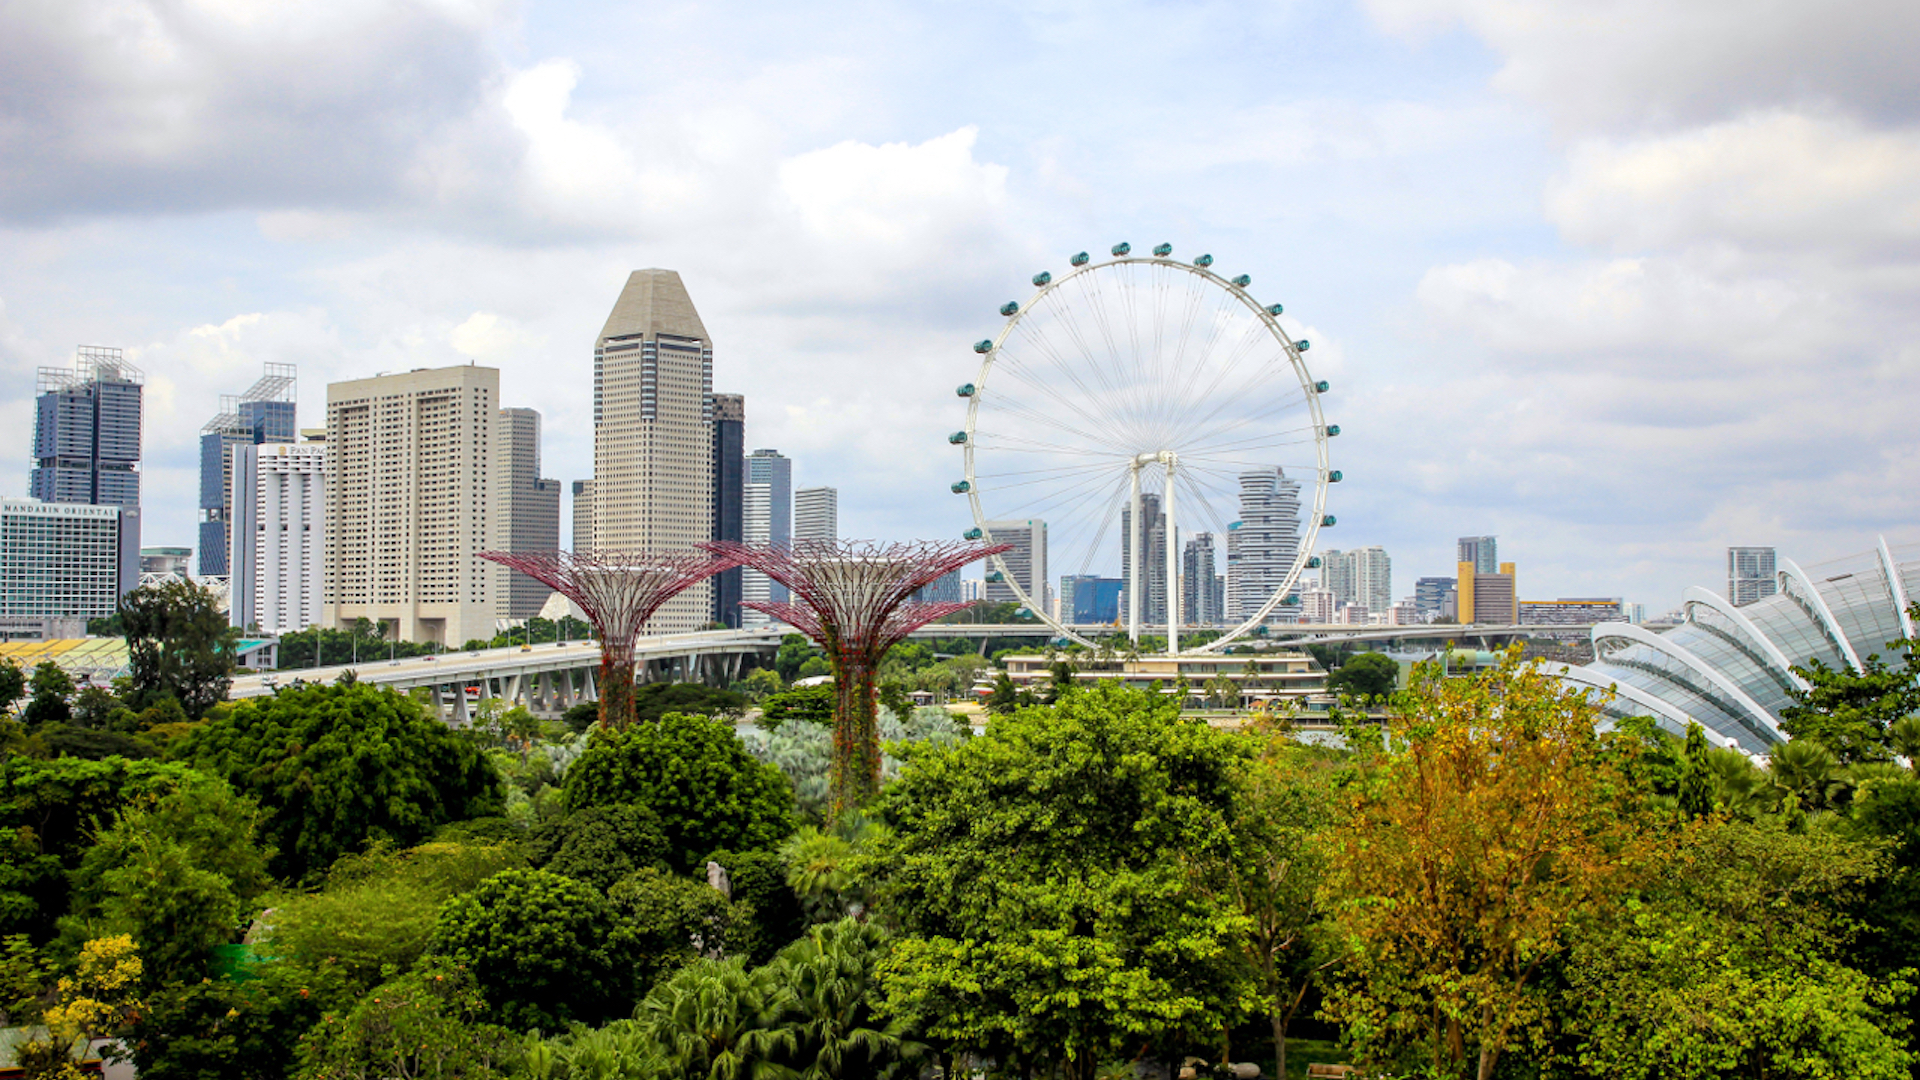 El hotel Mandarin Oriental Singapur está ubicado frente a los principales atractivos para conocer en un viaje por el país